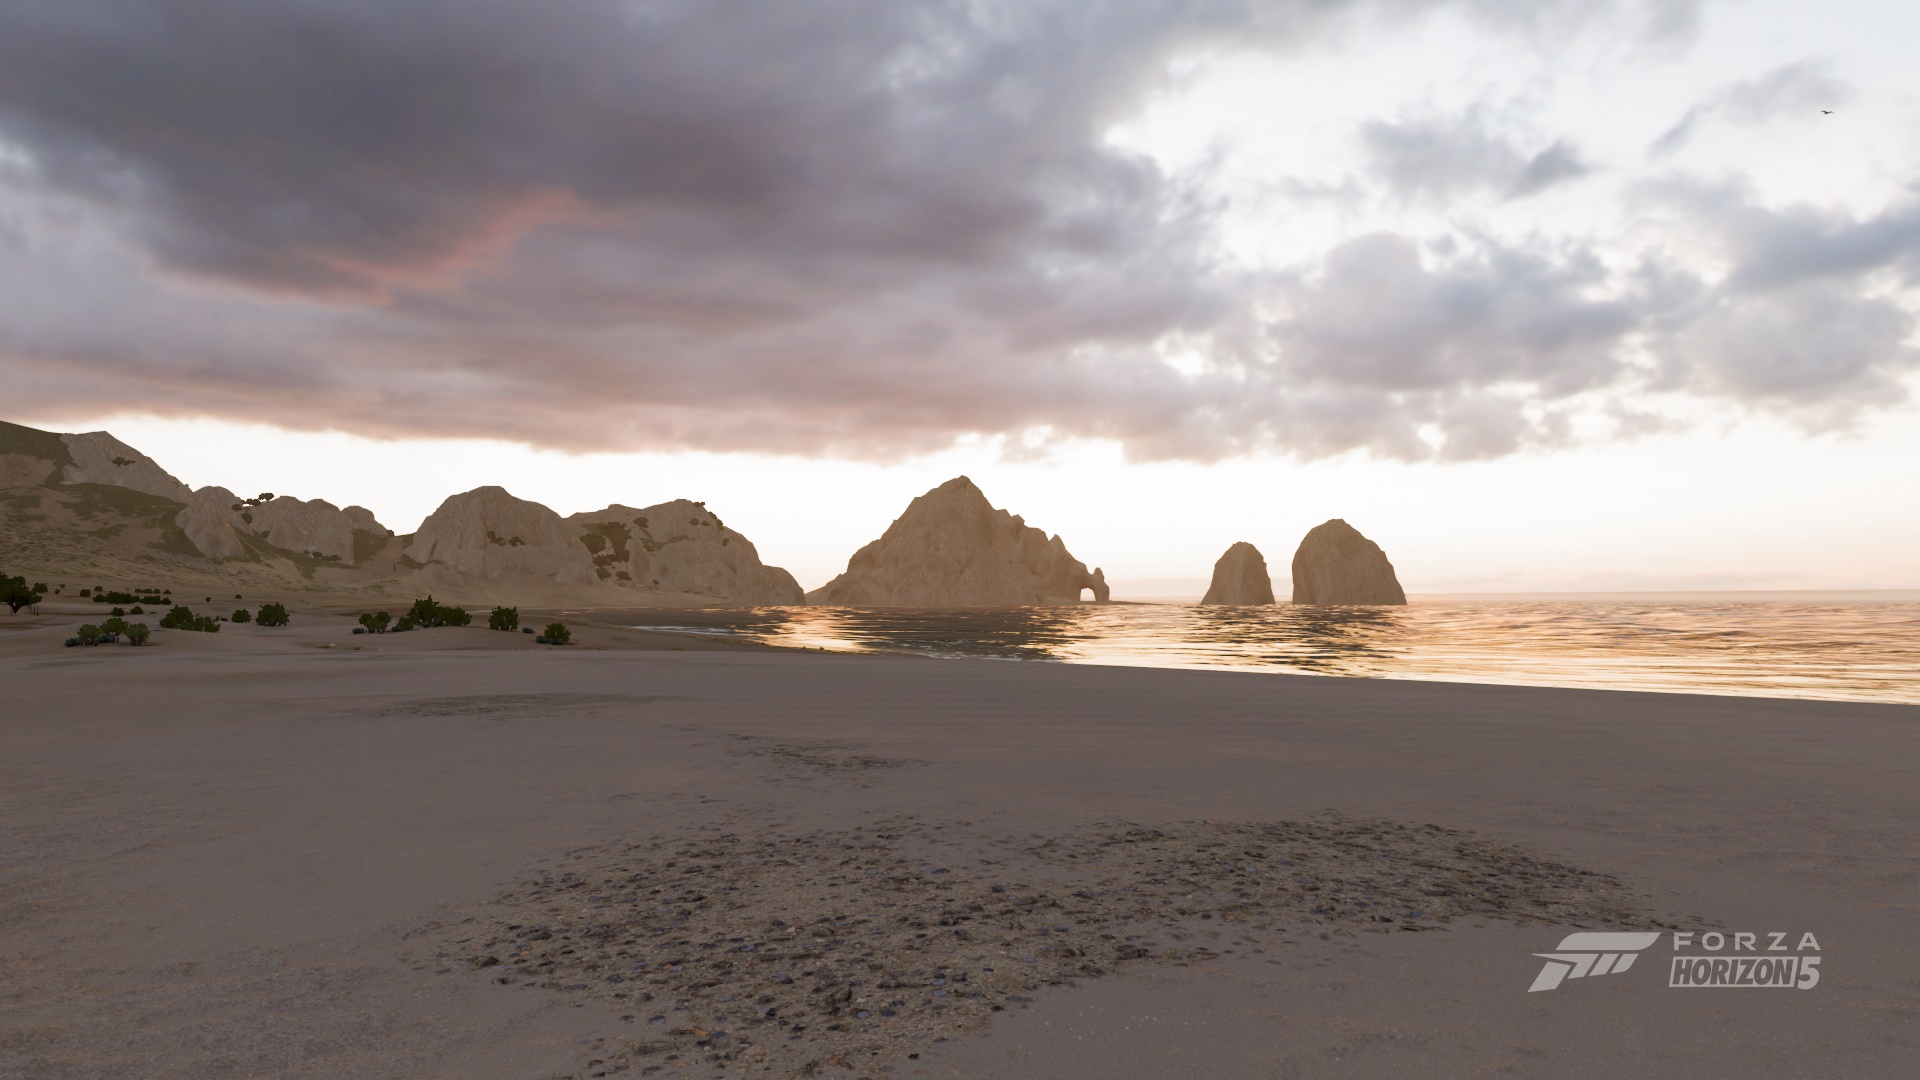 Forza Horizon 5 Screen Shot 1920x1080